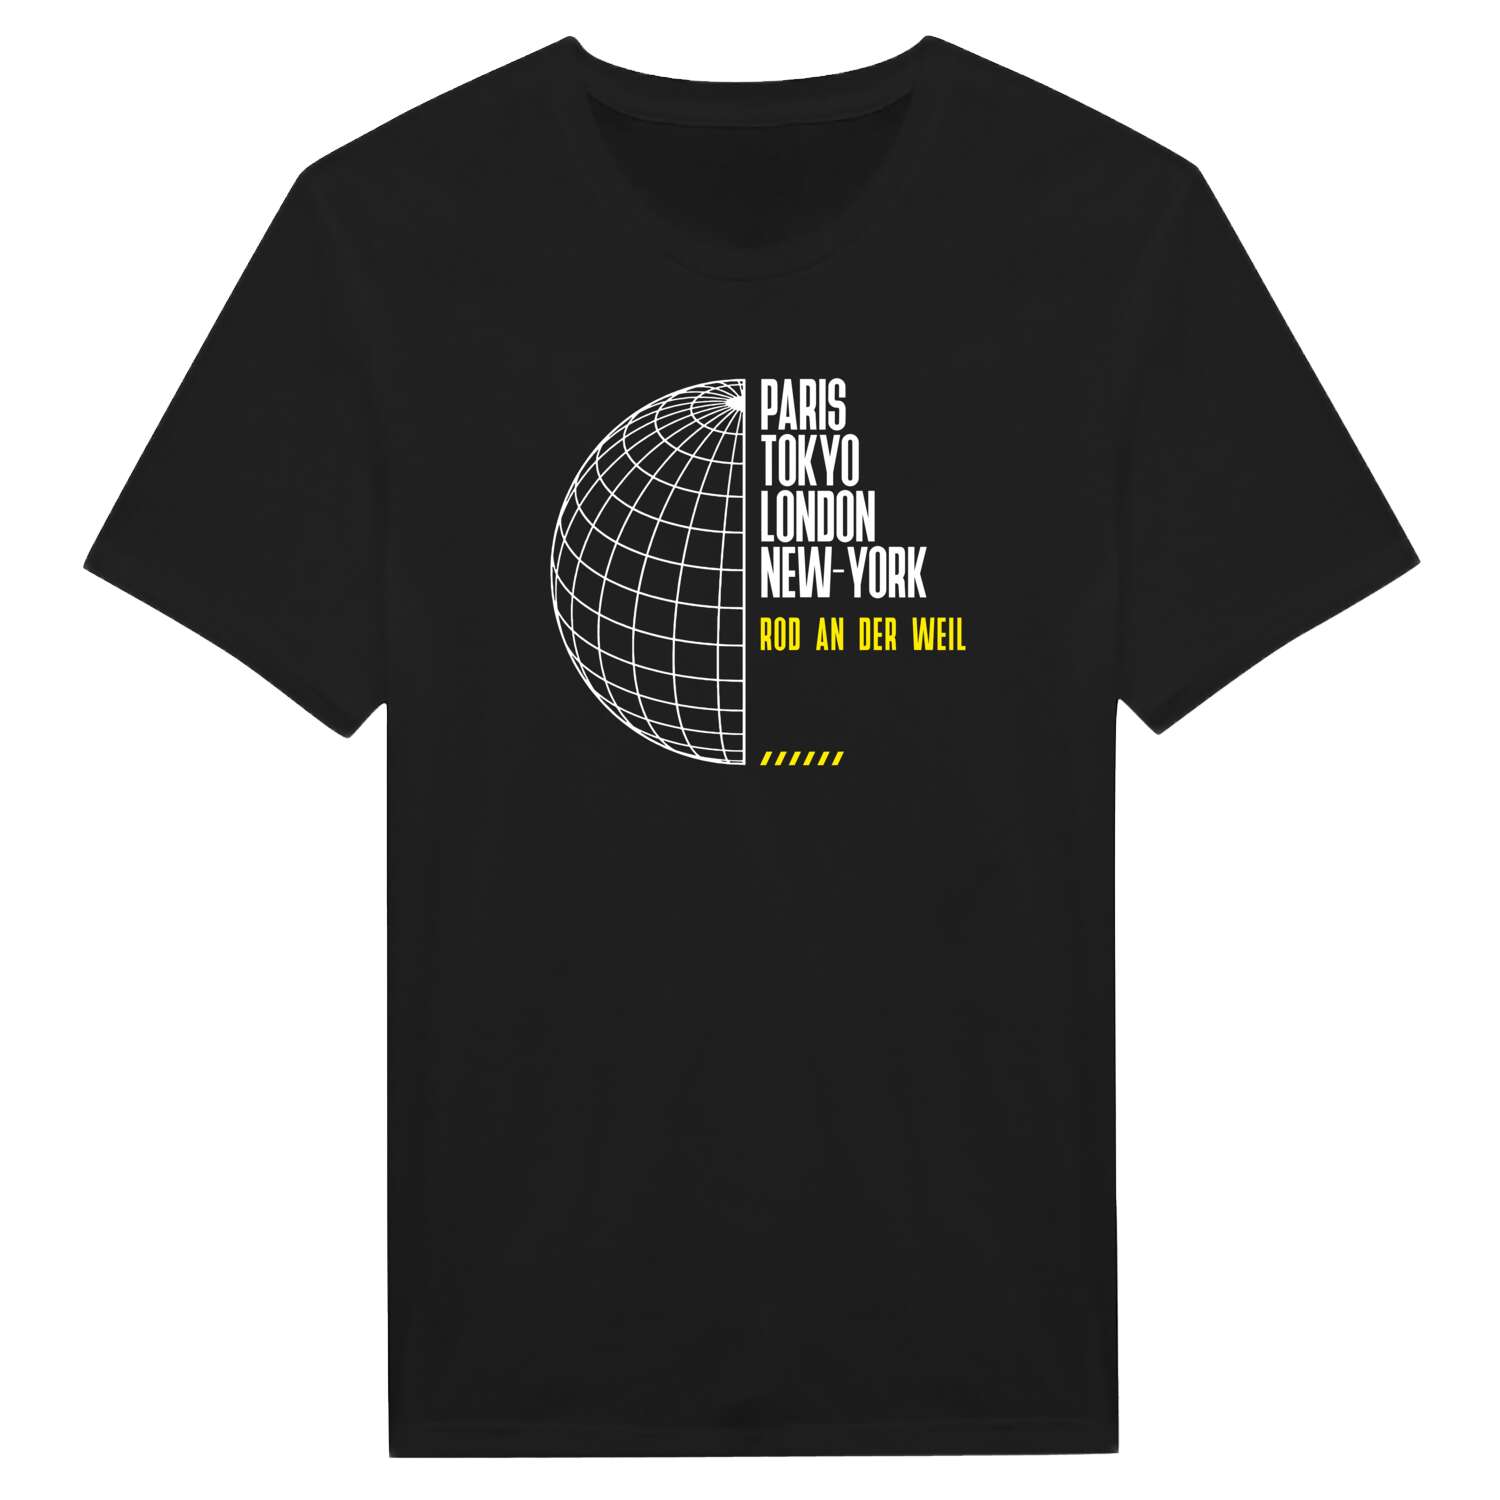 Rod an der Weil T-Shirt »Paris Tokyo London«